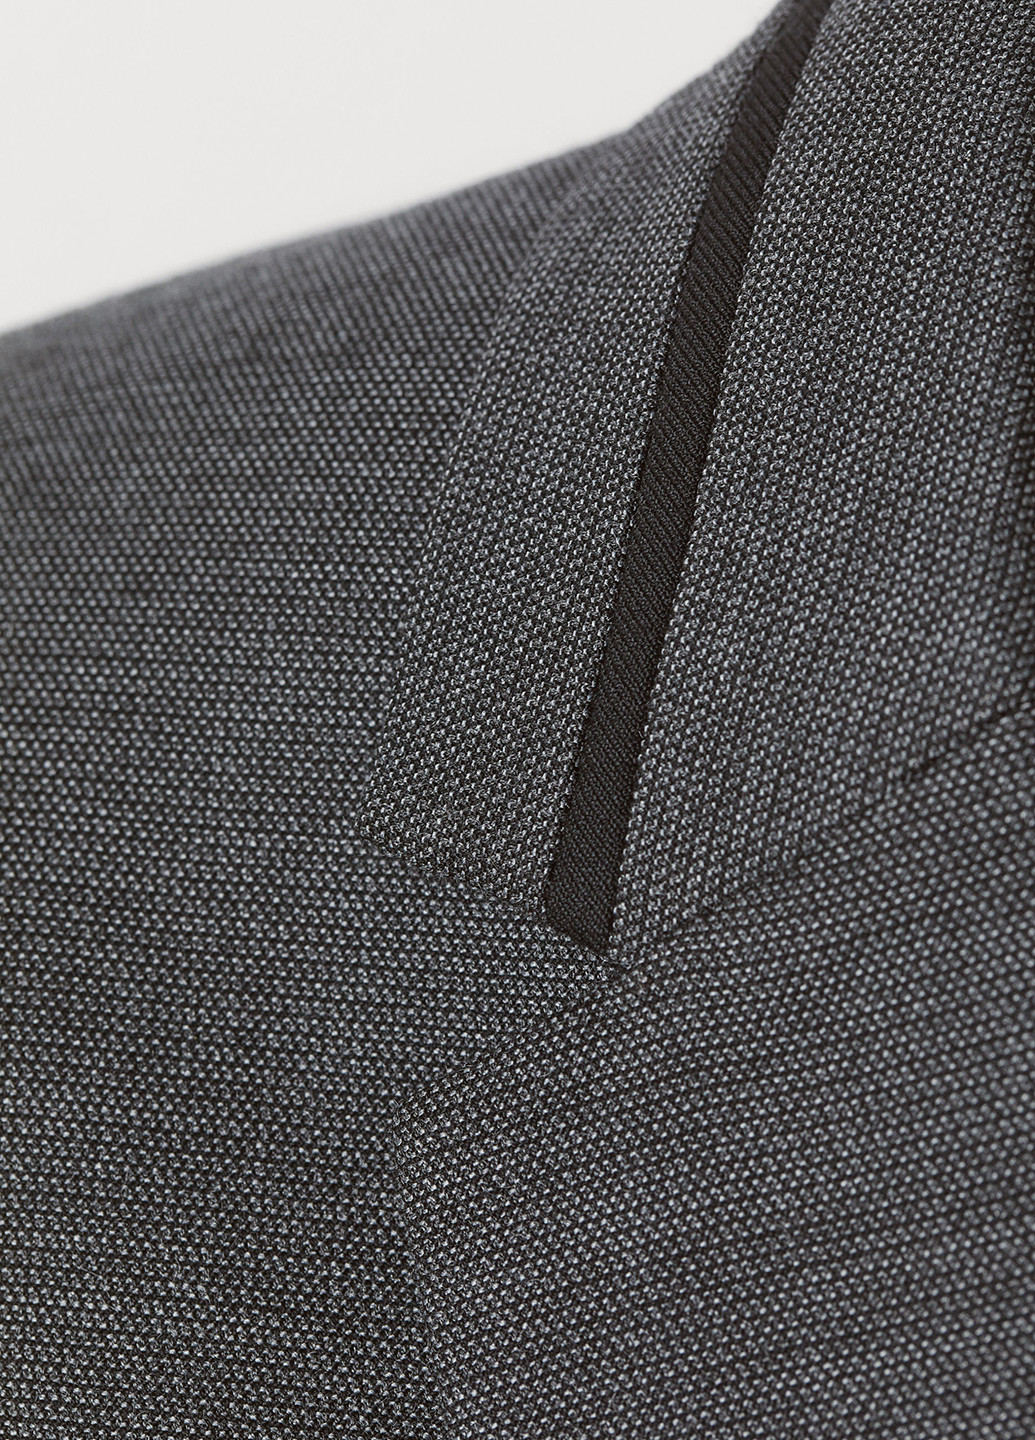 Пиджак H&M с длинным рукавом меланж грифельно-серый деловой